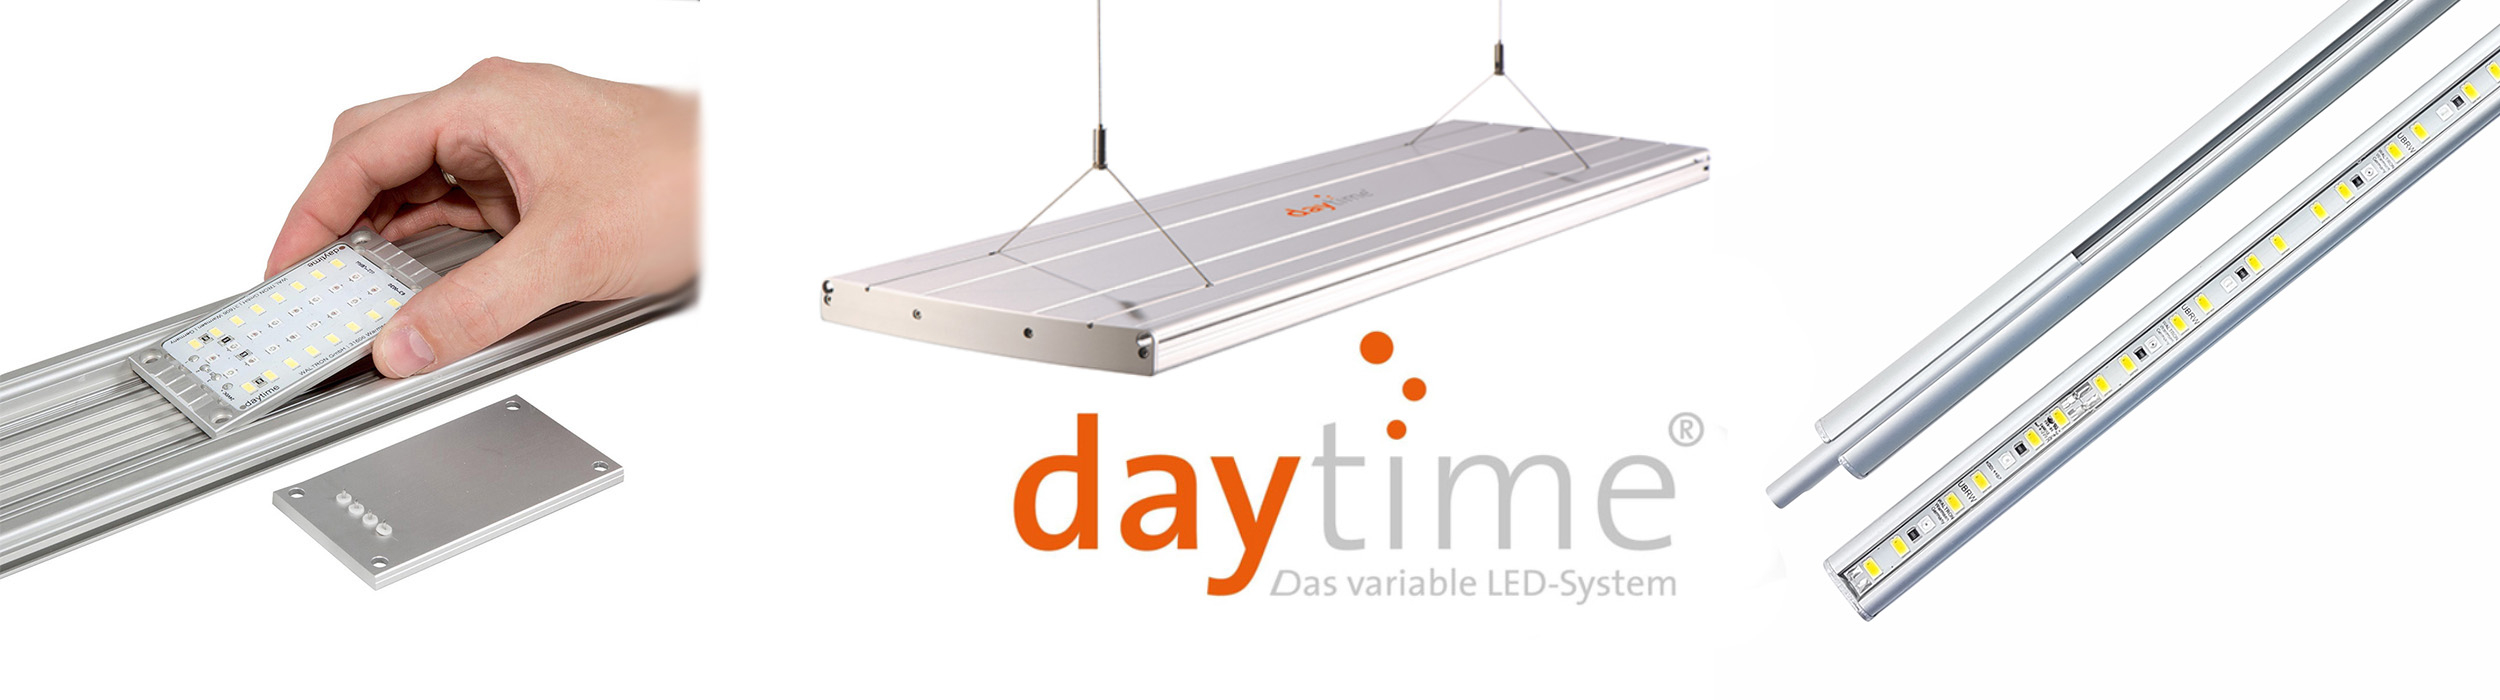 daytime - Hochwertige LED Technik aus Deutschland